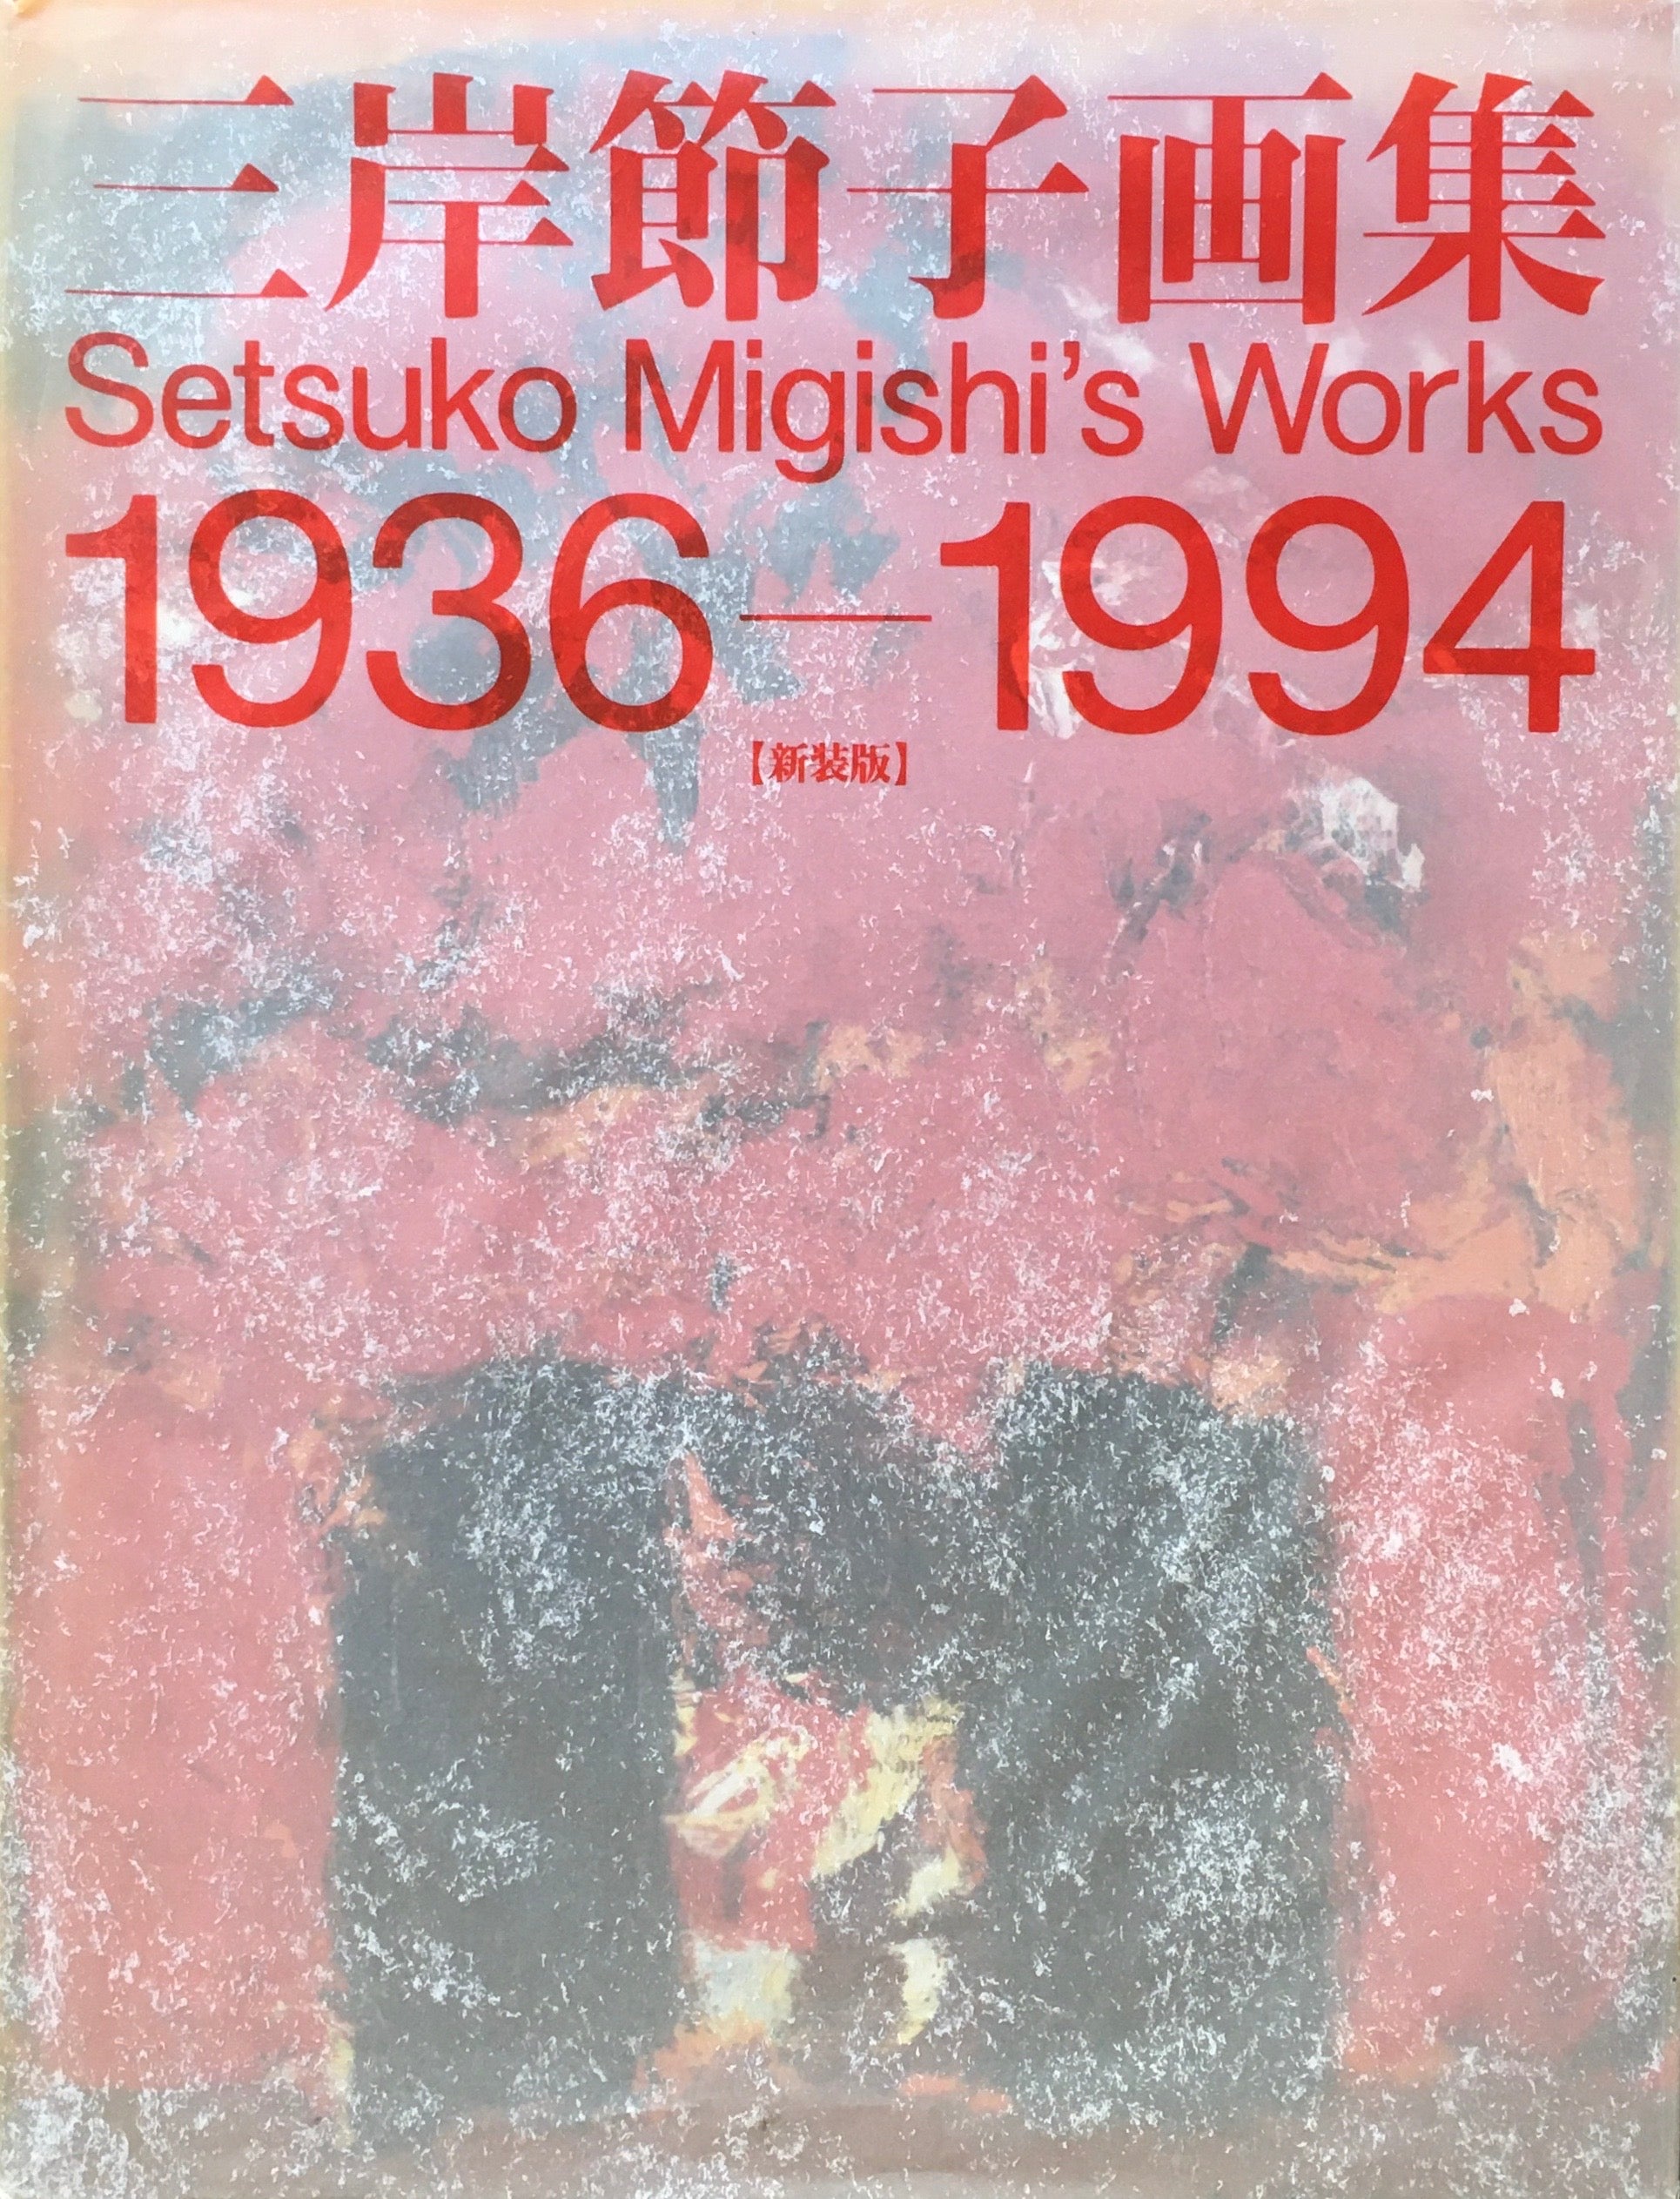 三岸節子画集 新装版 1936-1994 – smokebooks shop